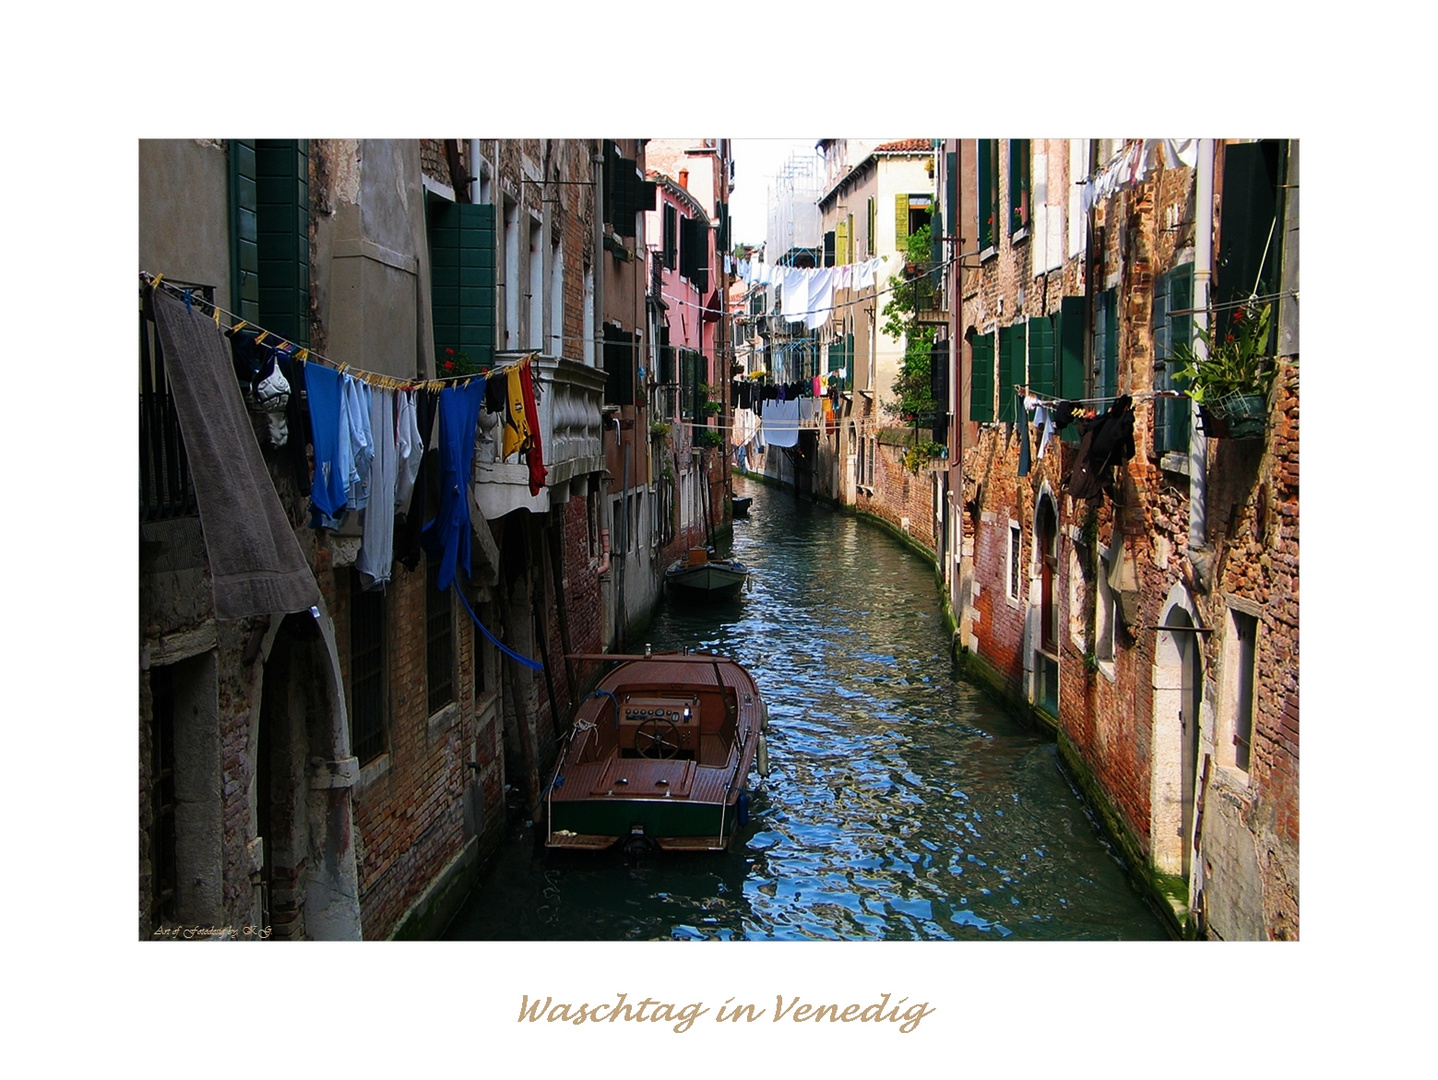 Waschtag in Venedig...